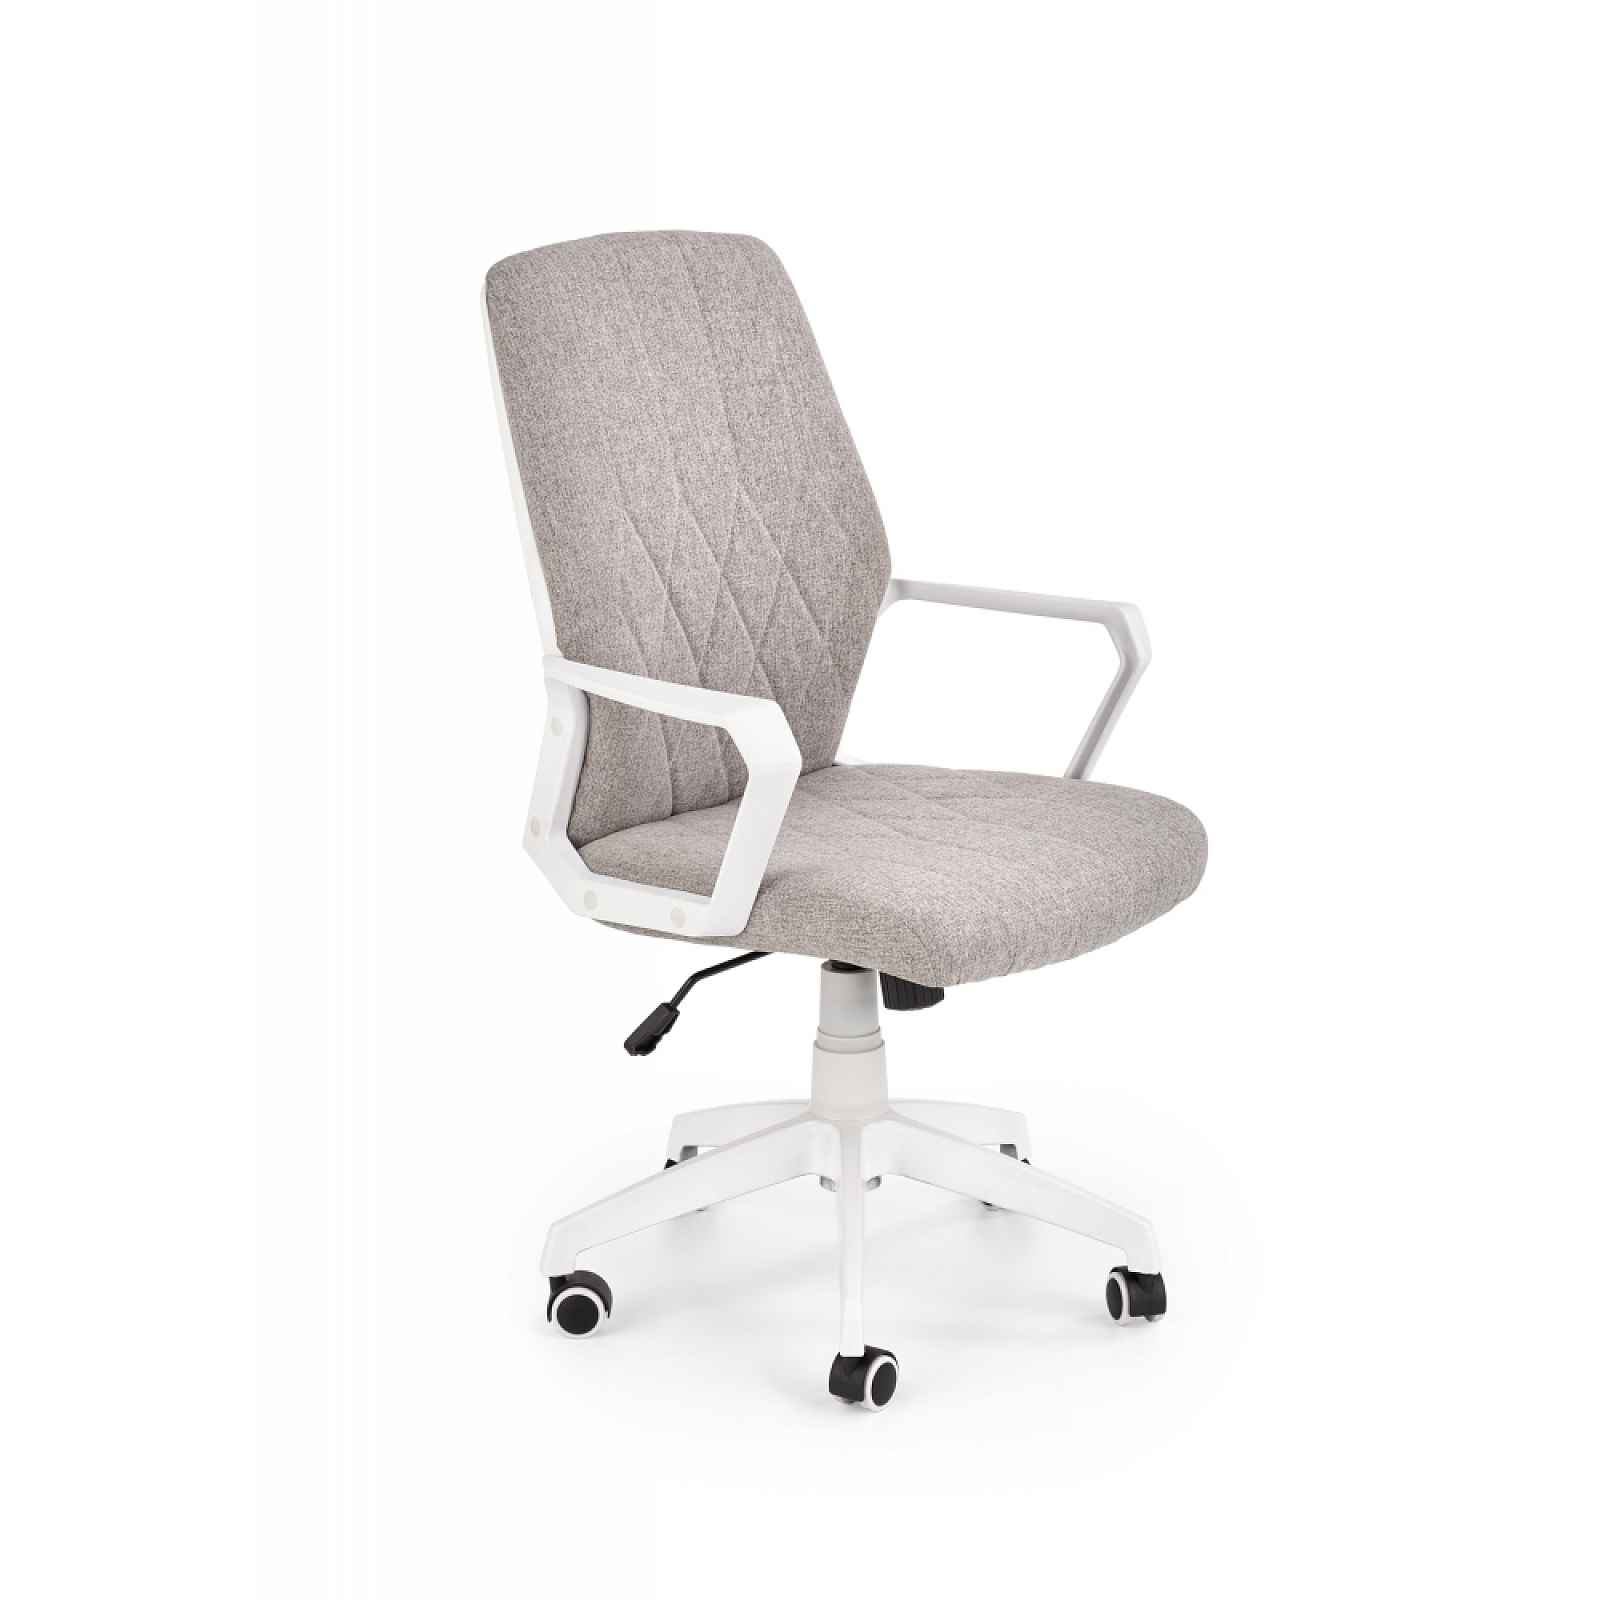 Kancelářská židle SPIN 2, béžovo-bílá